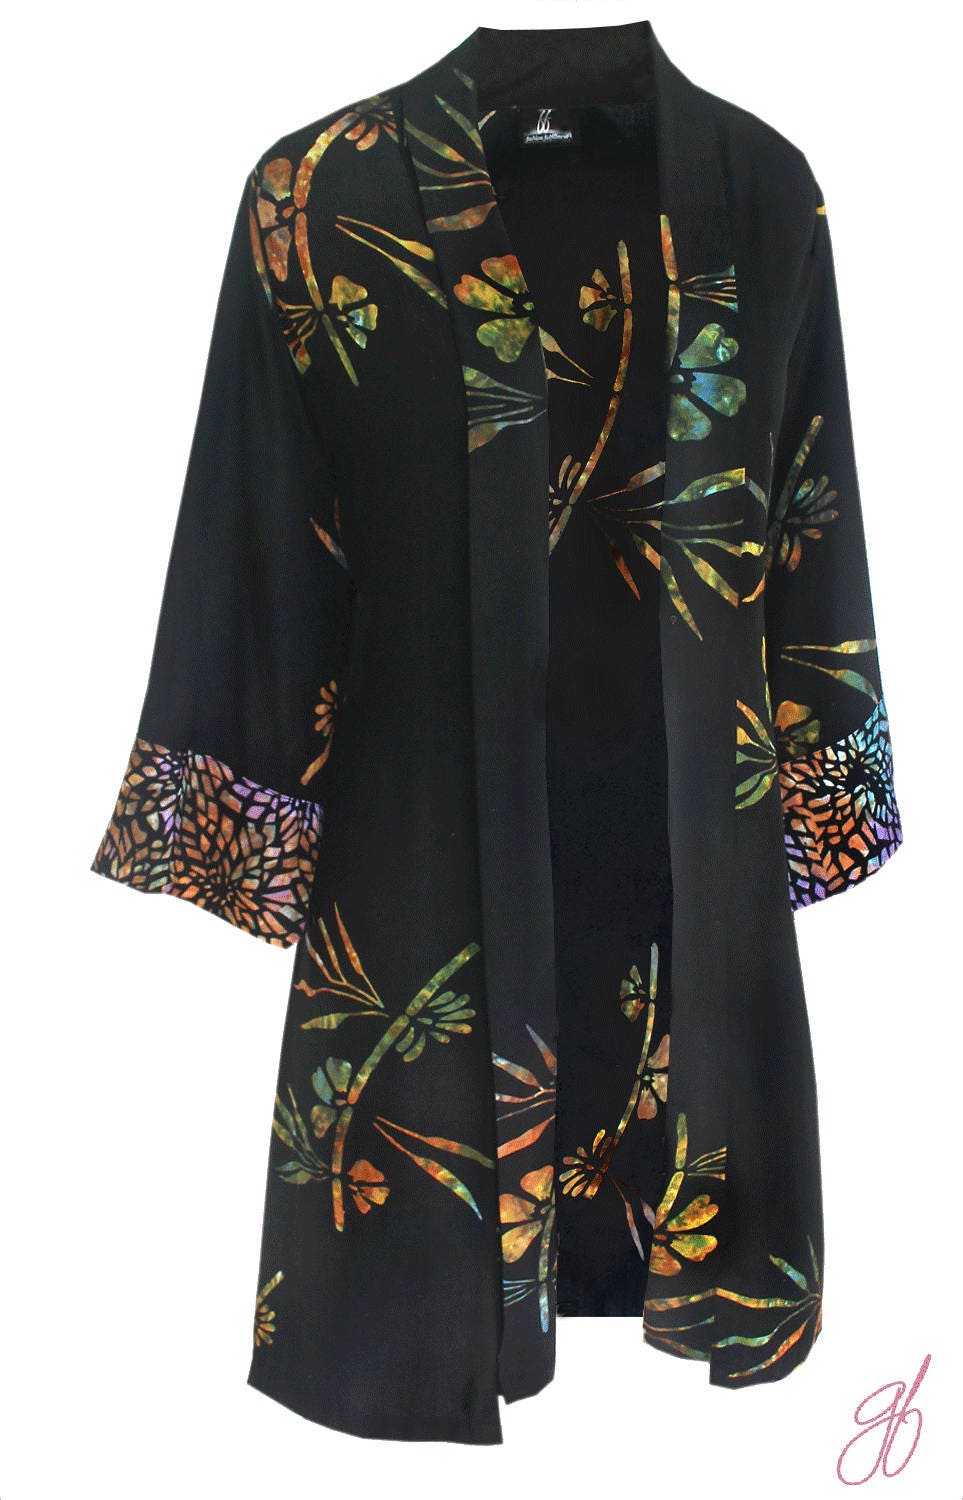 3X Kimono Plus Size Jacket Art Wear Japanese Style Cardigan | Etsy